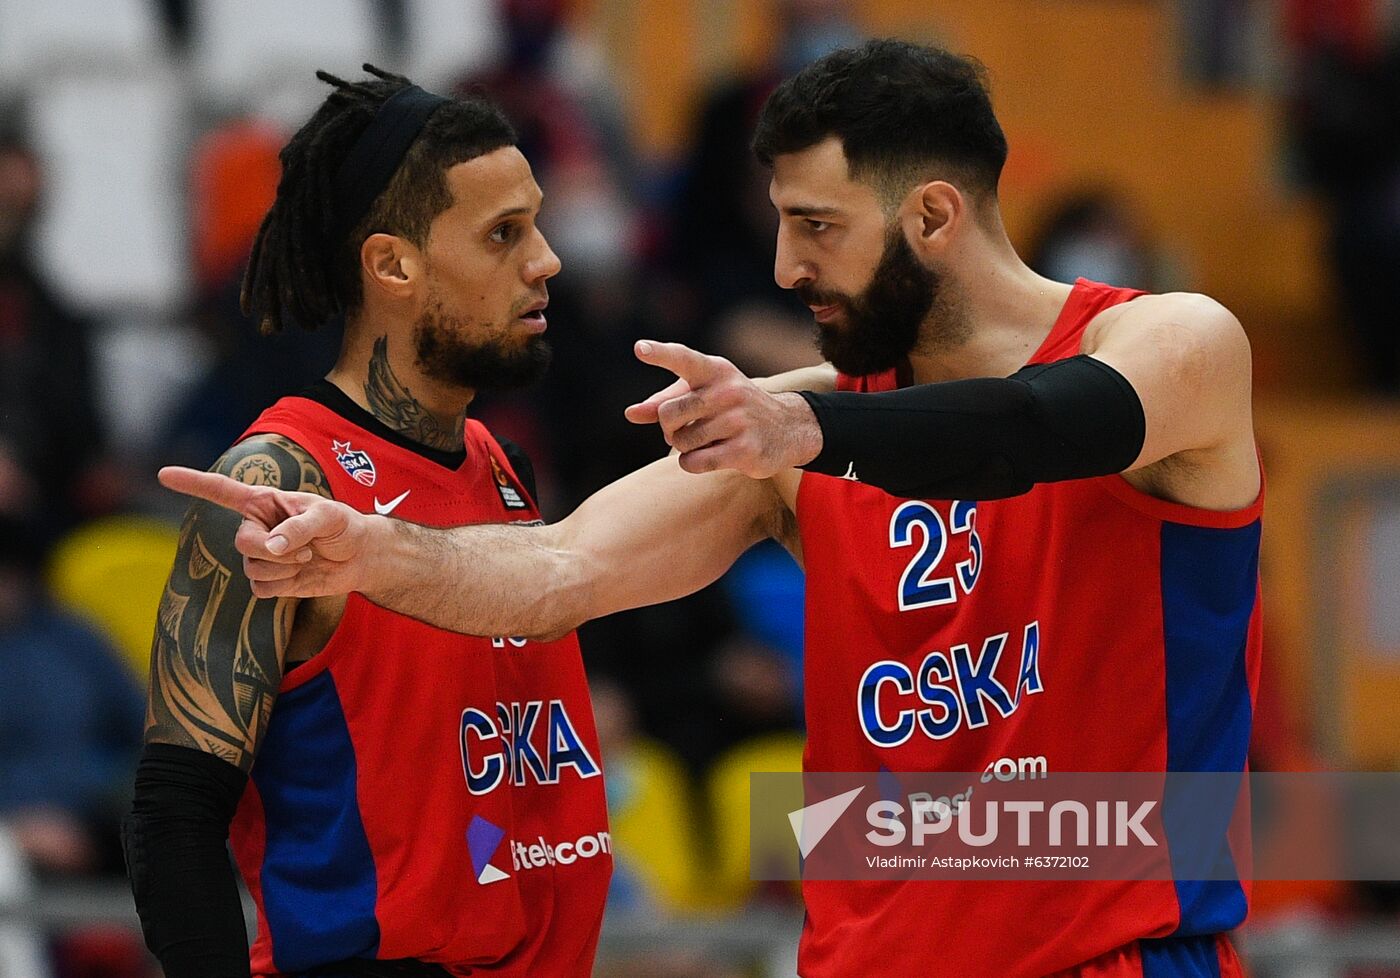 Russia Basketball Euroleague CSKA - Valencia